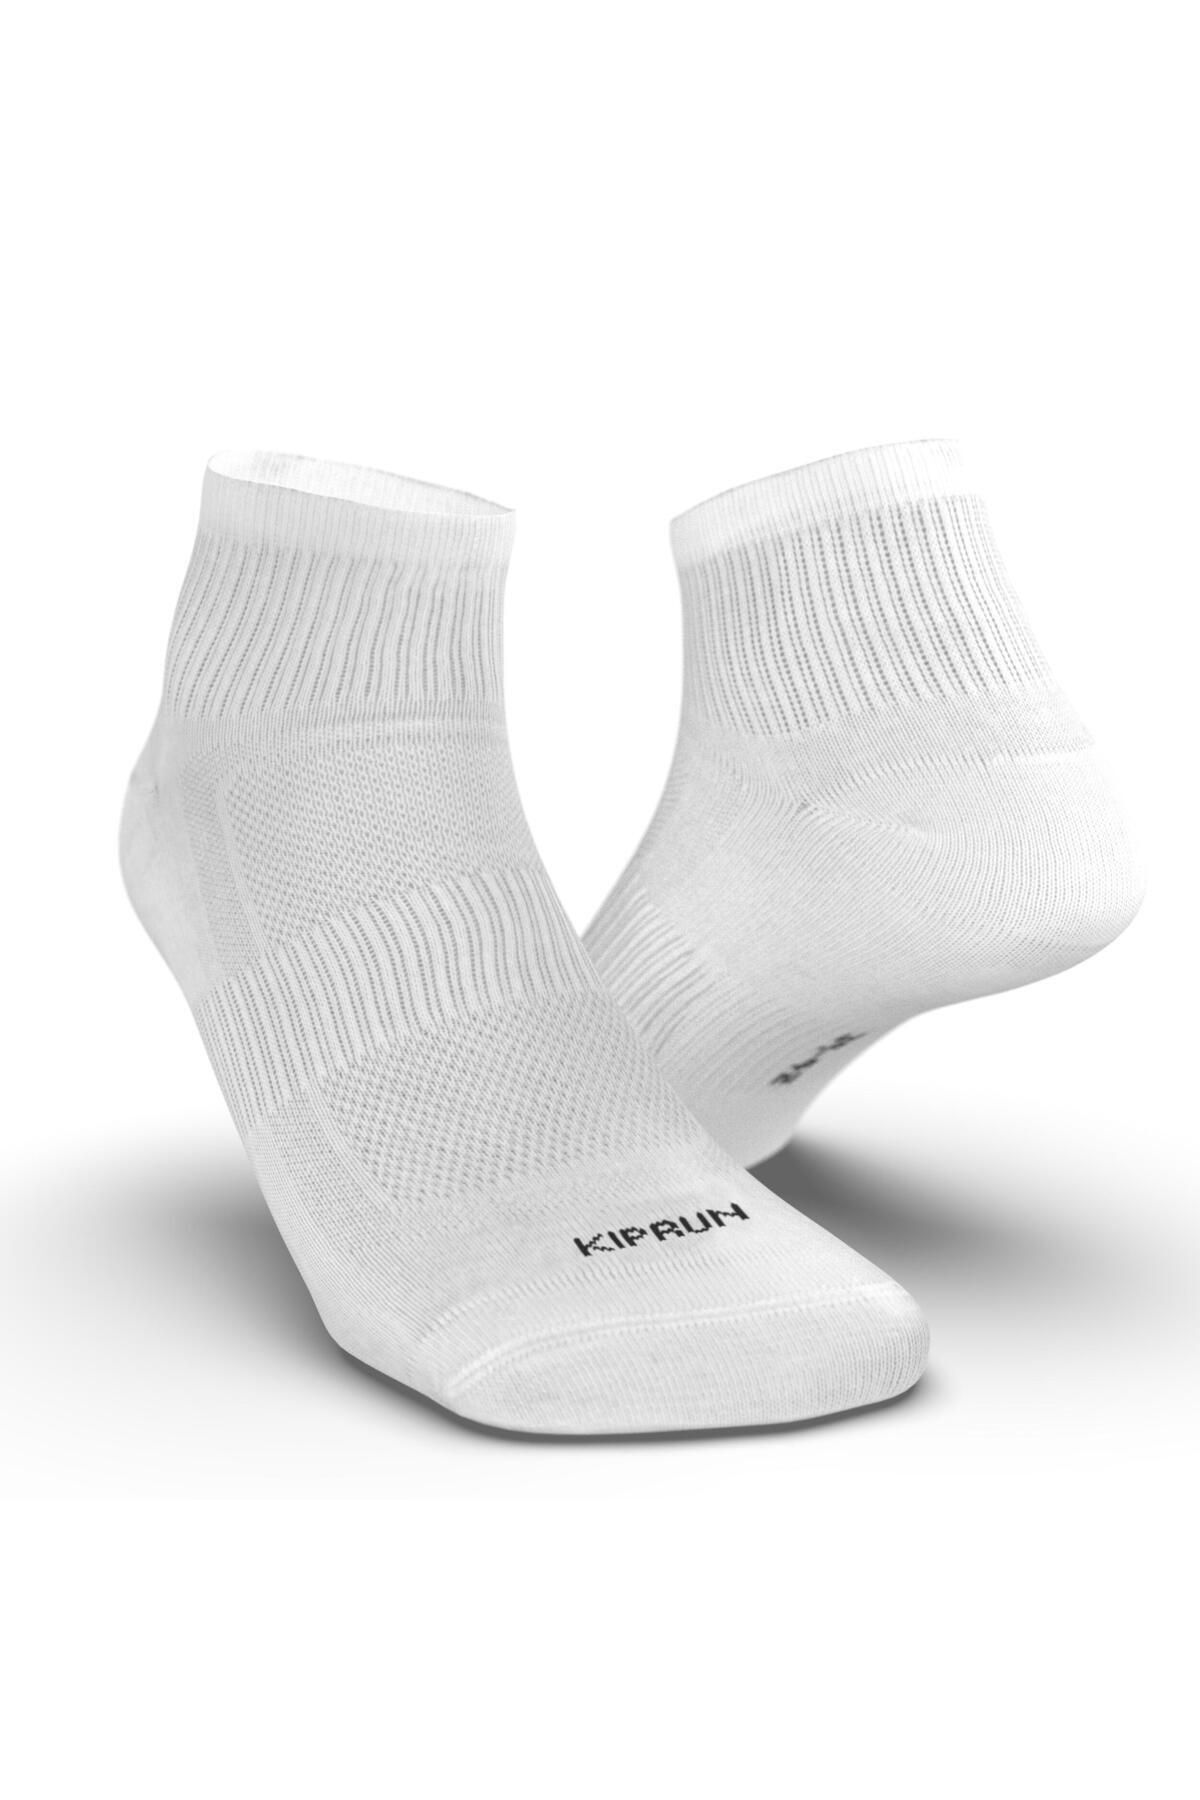 Decathlon Kiprun Beyaz Çorap / Koşu - 3'li Paket - Run100